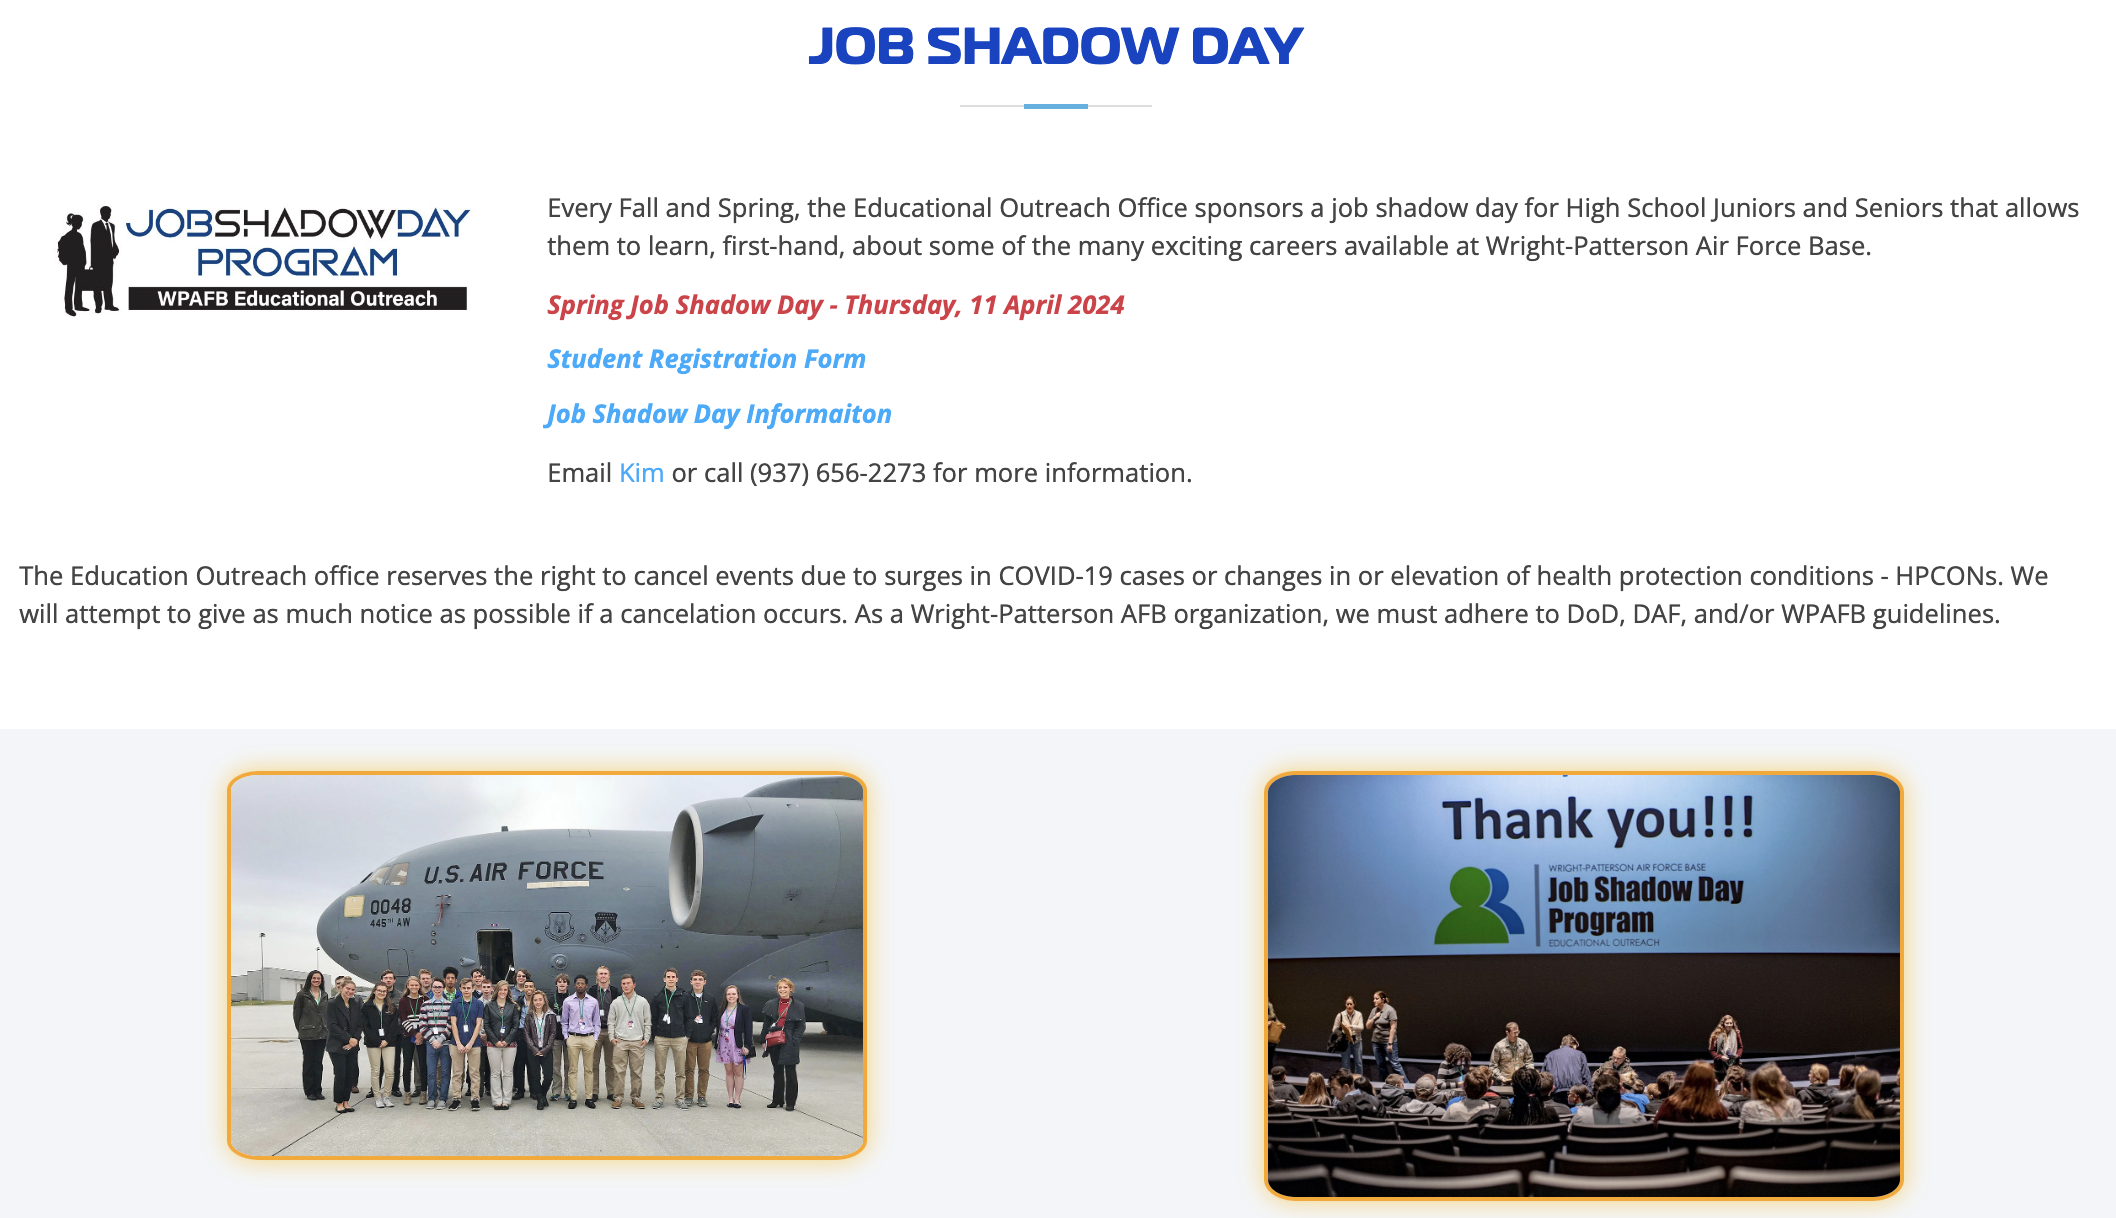 Job Shadow